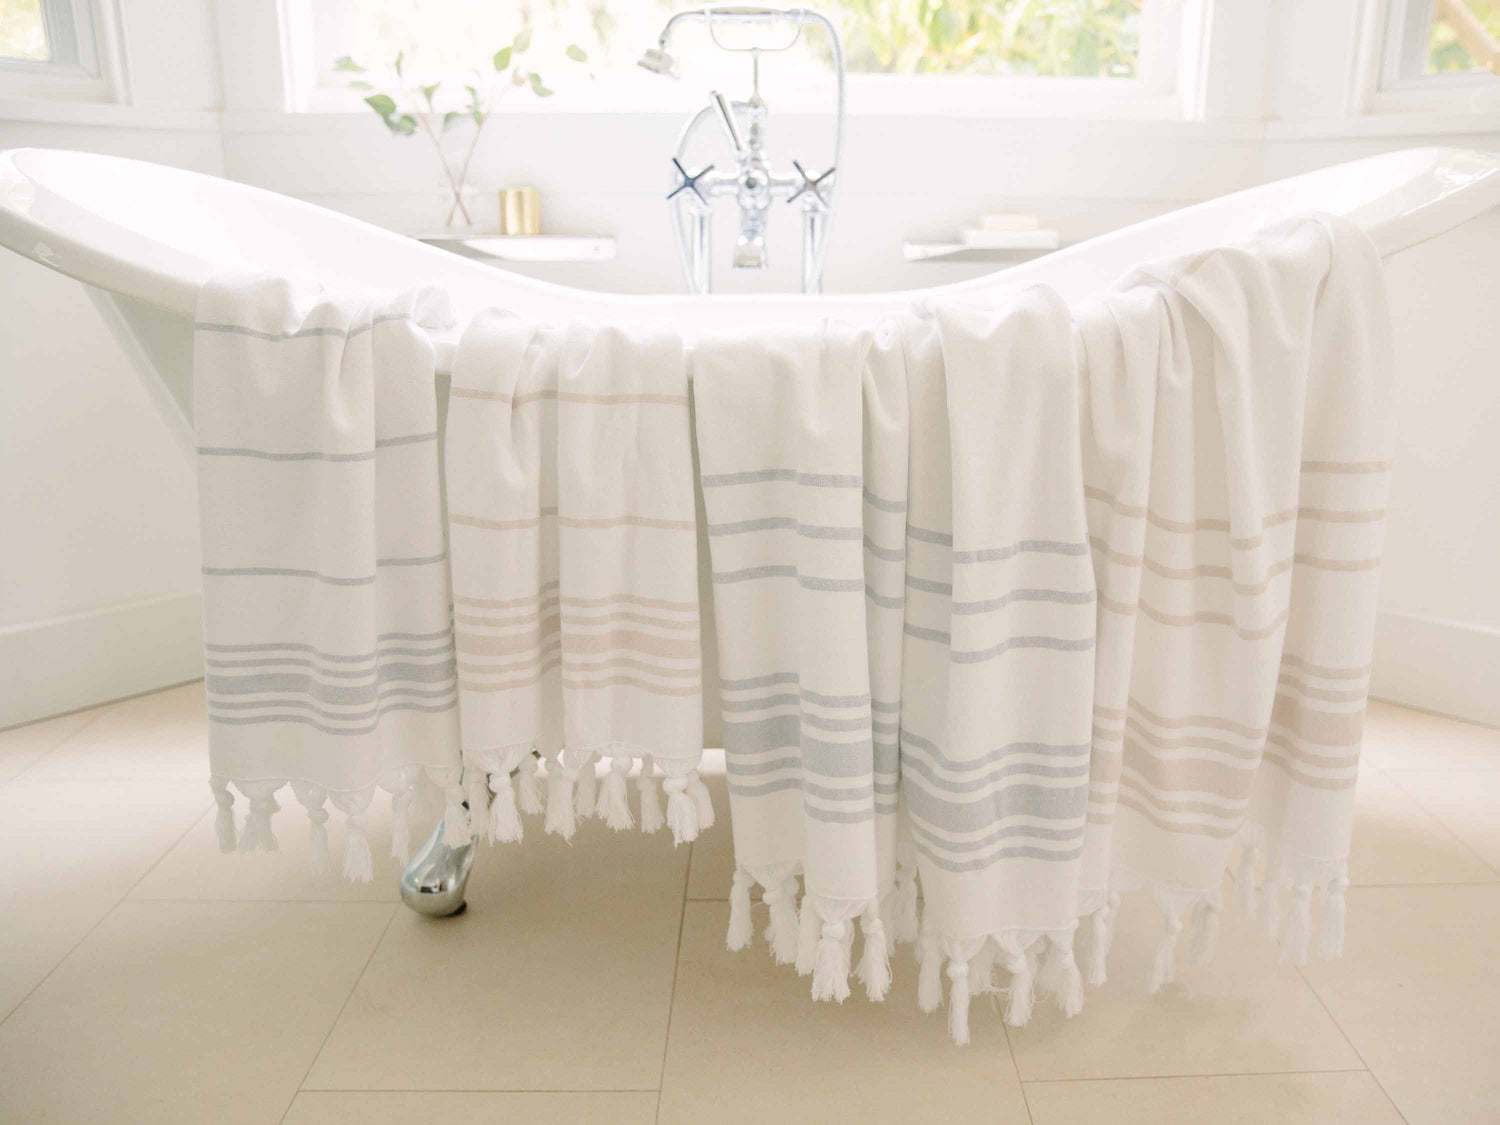 White Azul Classic Turkish Hand Towel